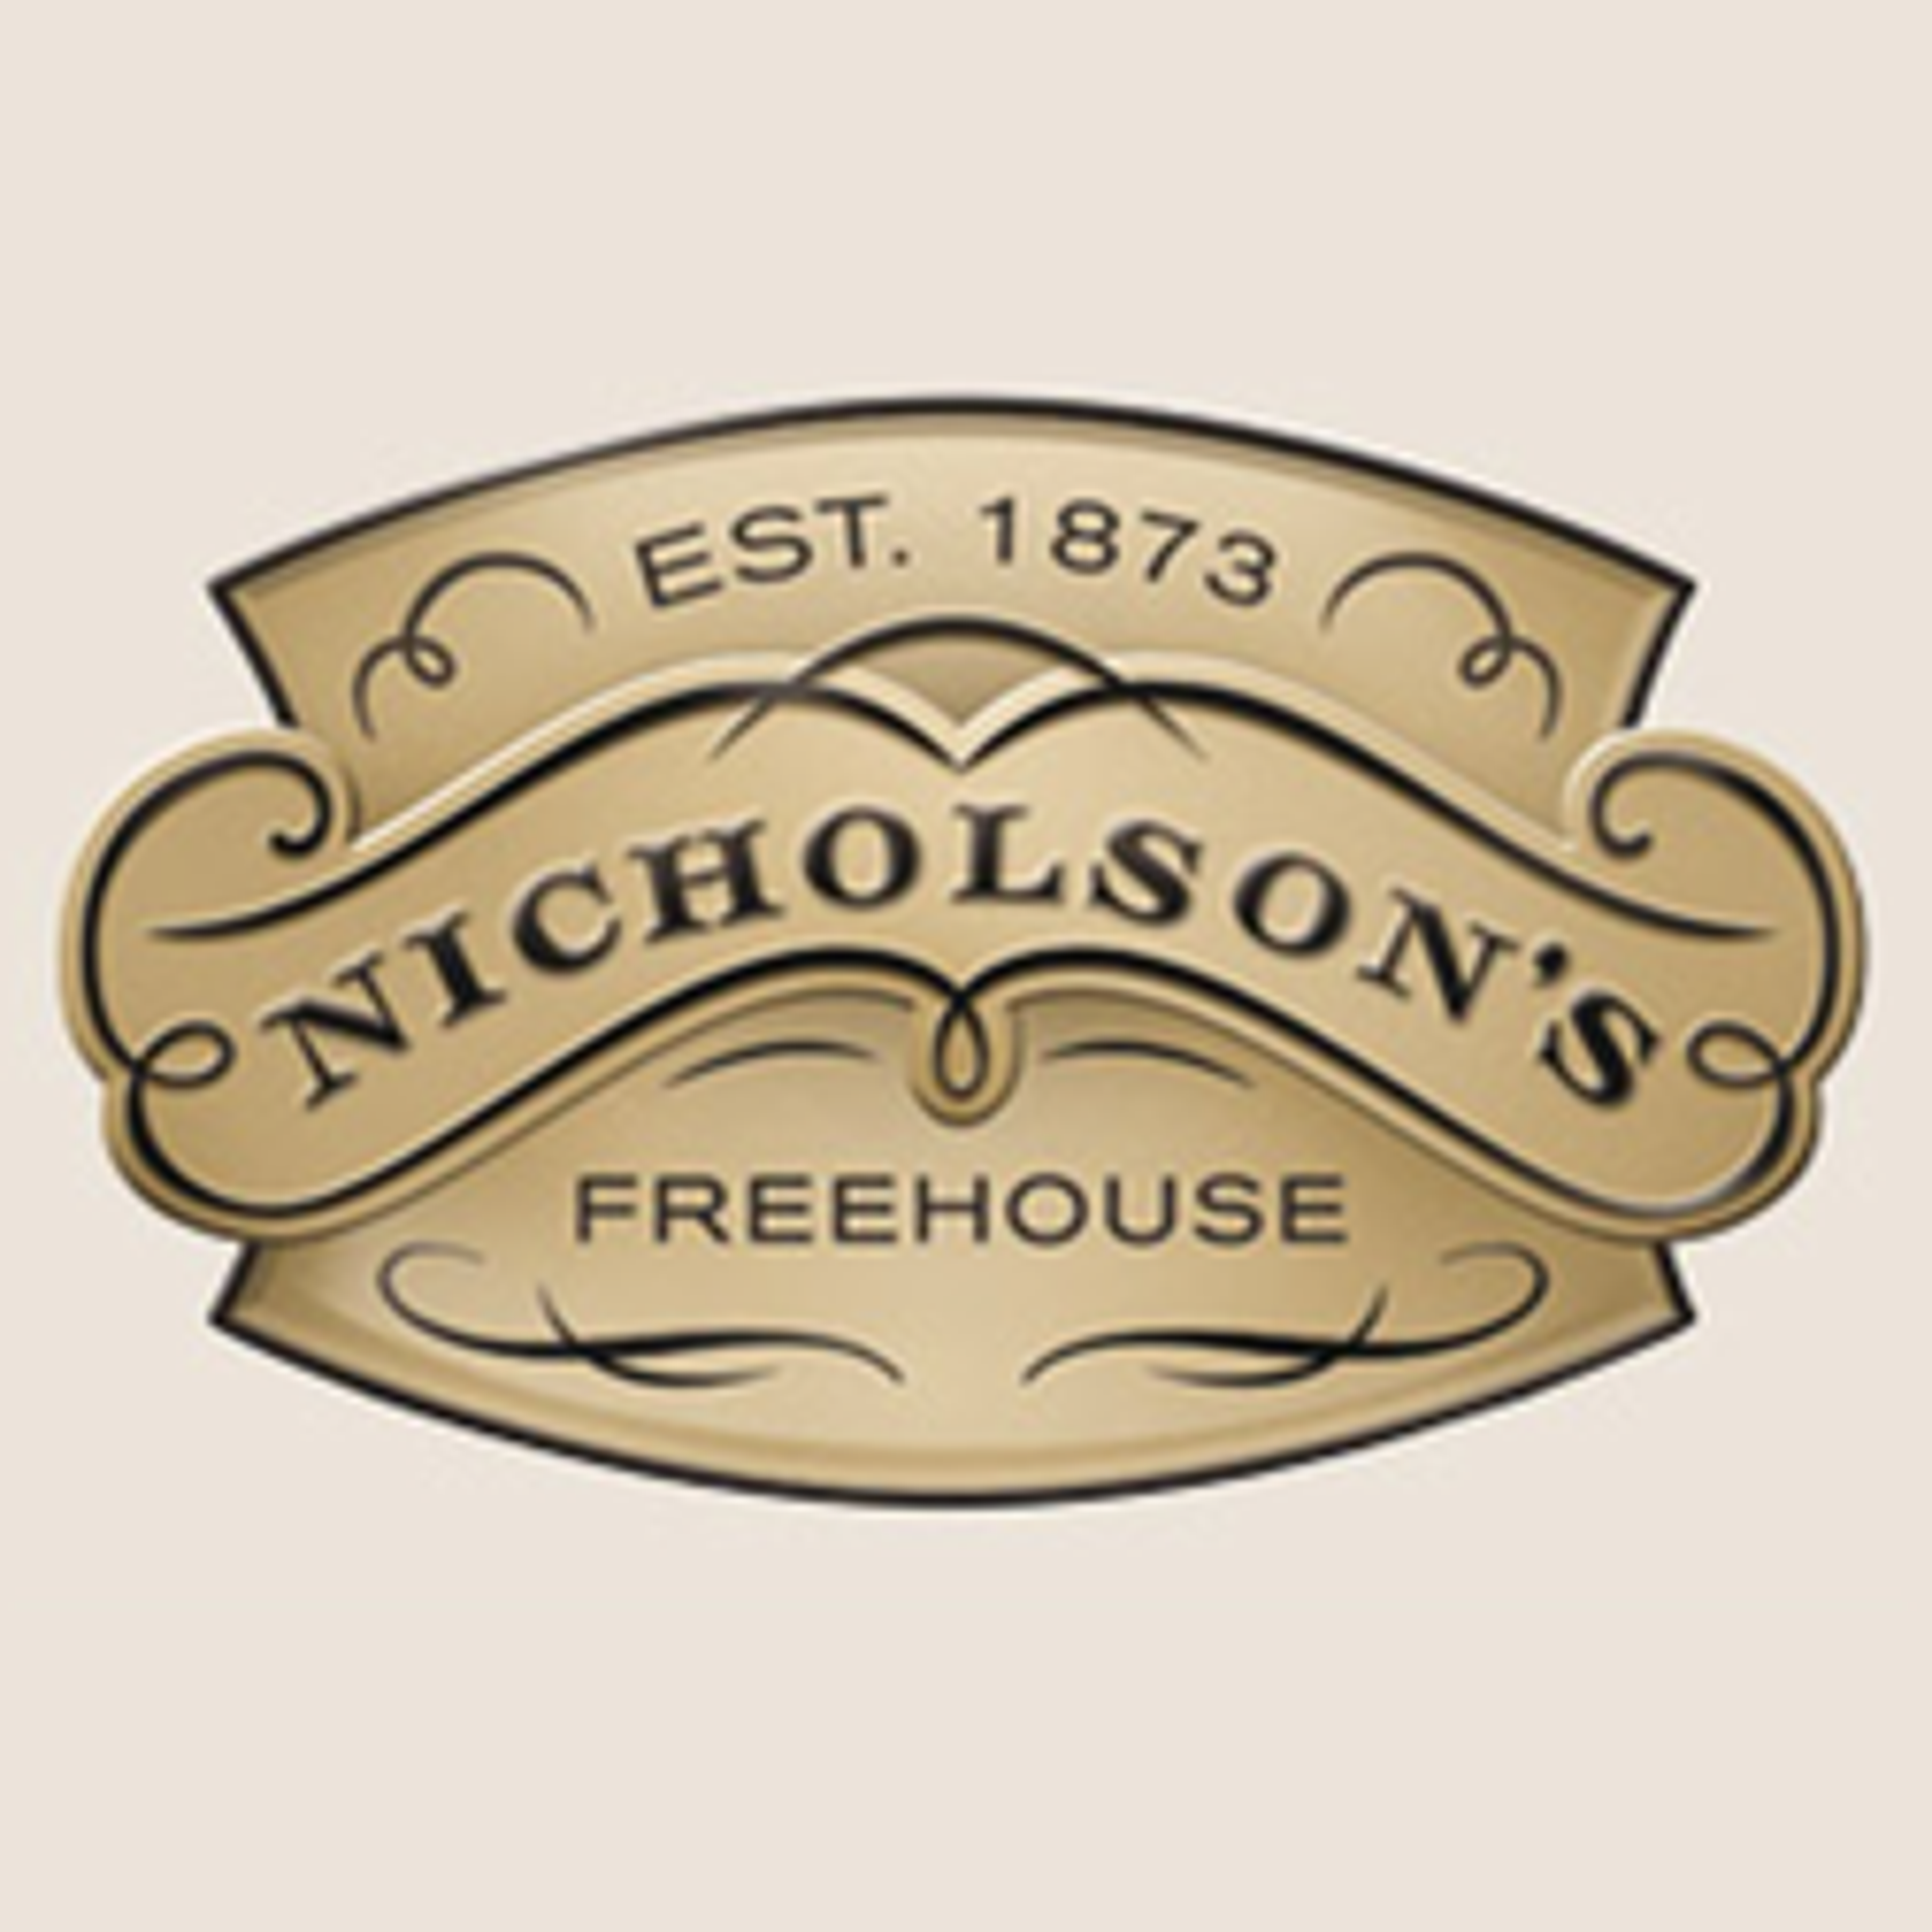  Nicholson's Pubs 